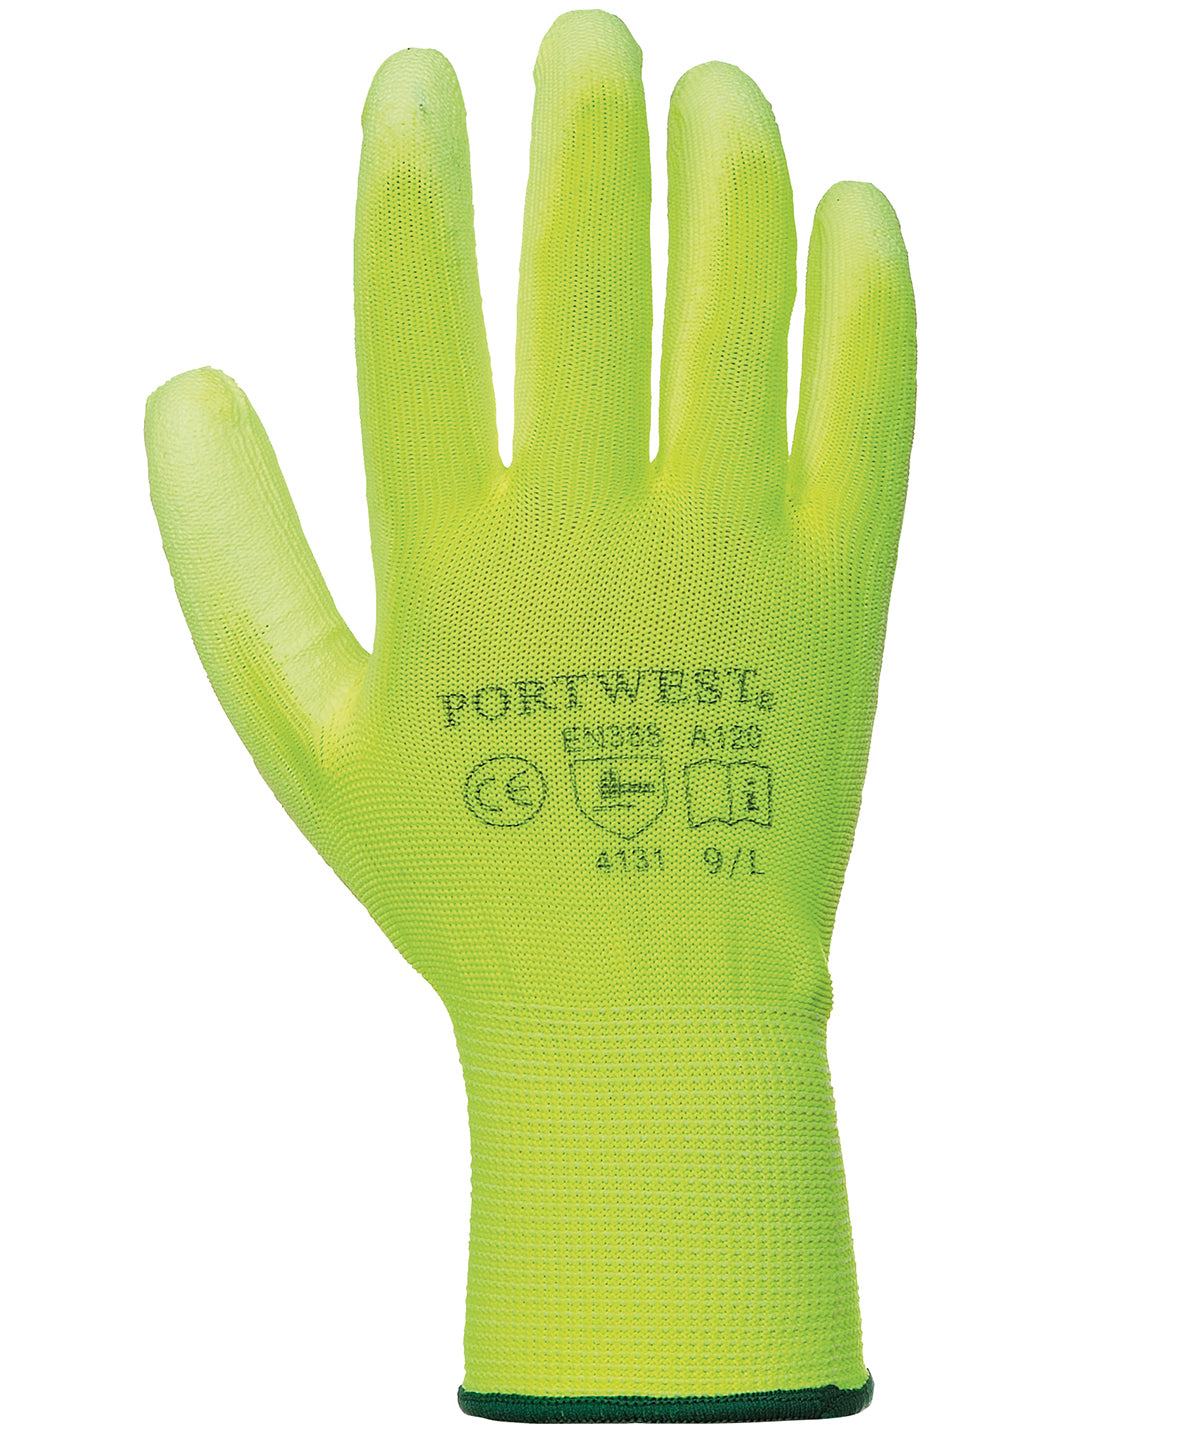 PU palm glove (A120)